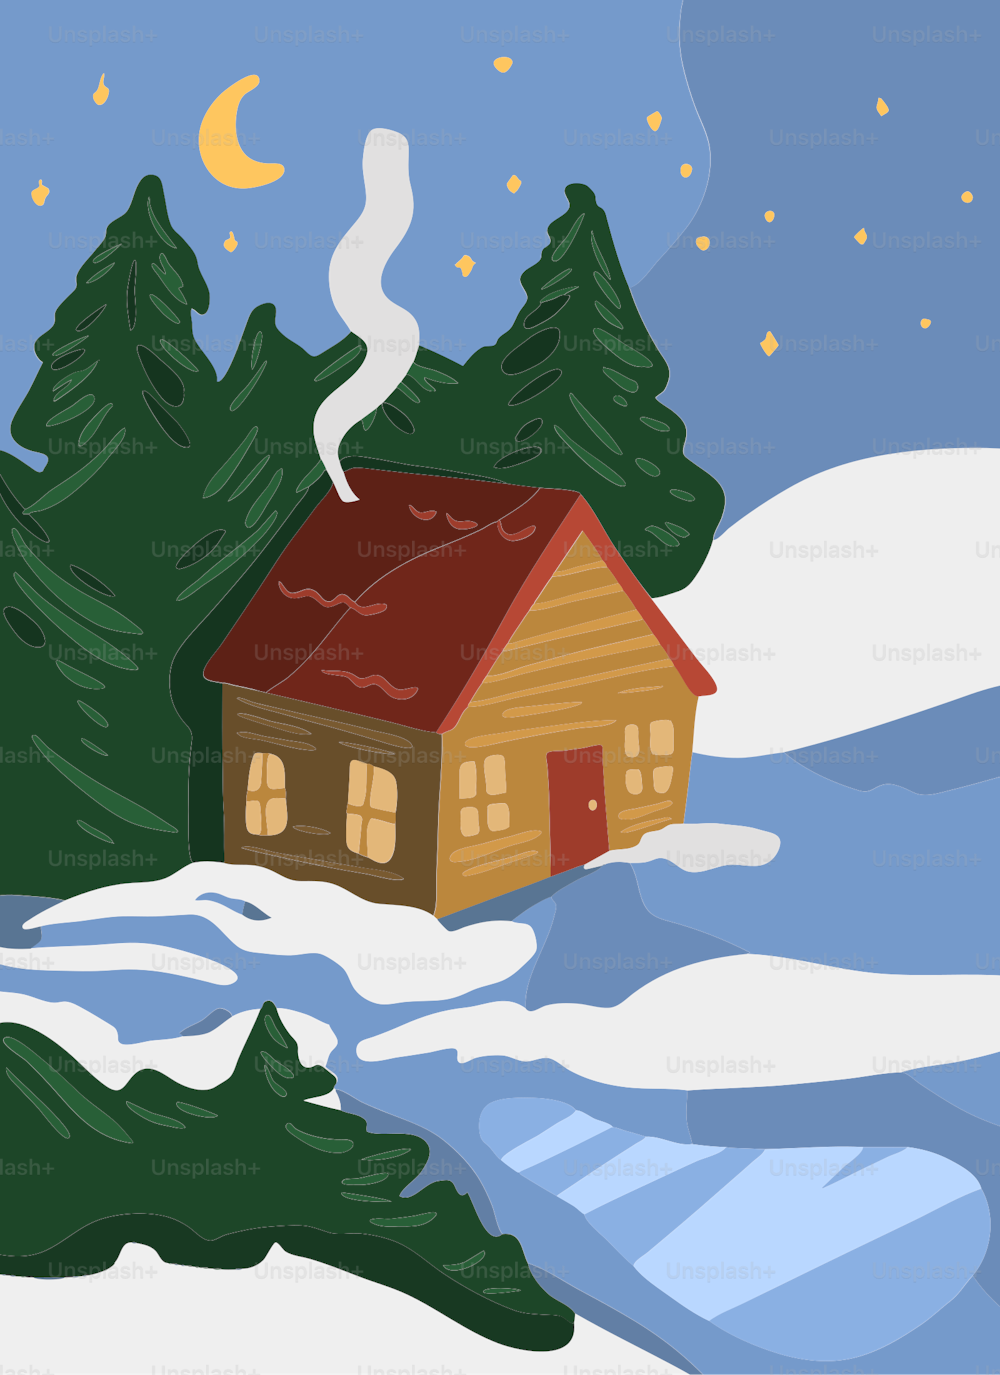 Ein Haus in einer verschneiten Landschaft mit Bäumen